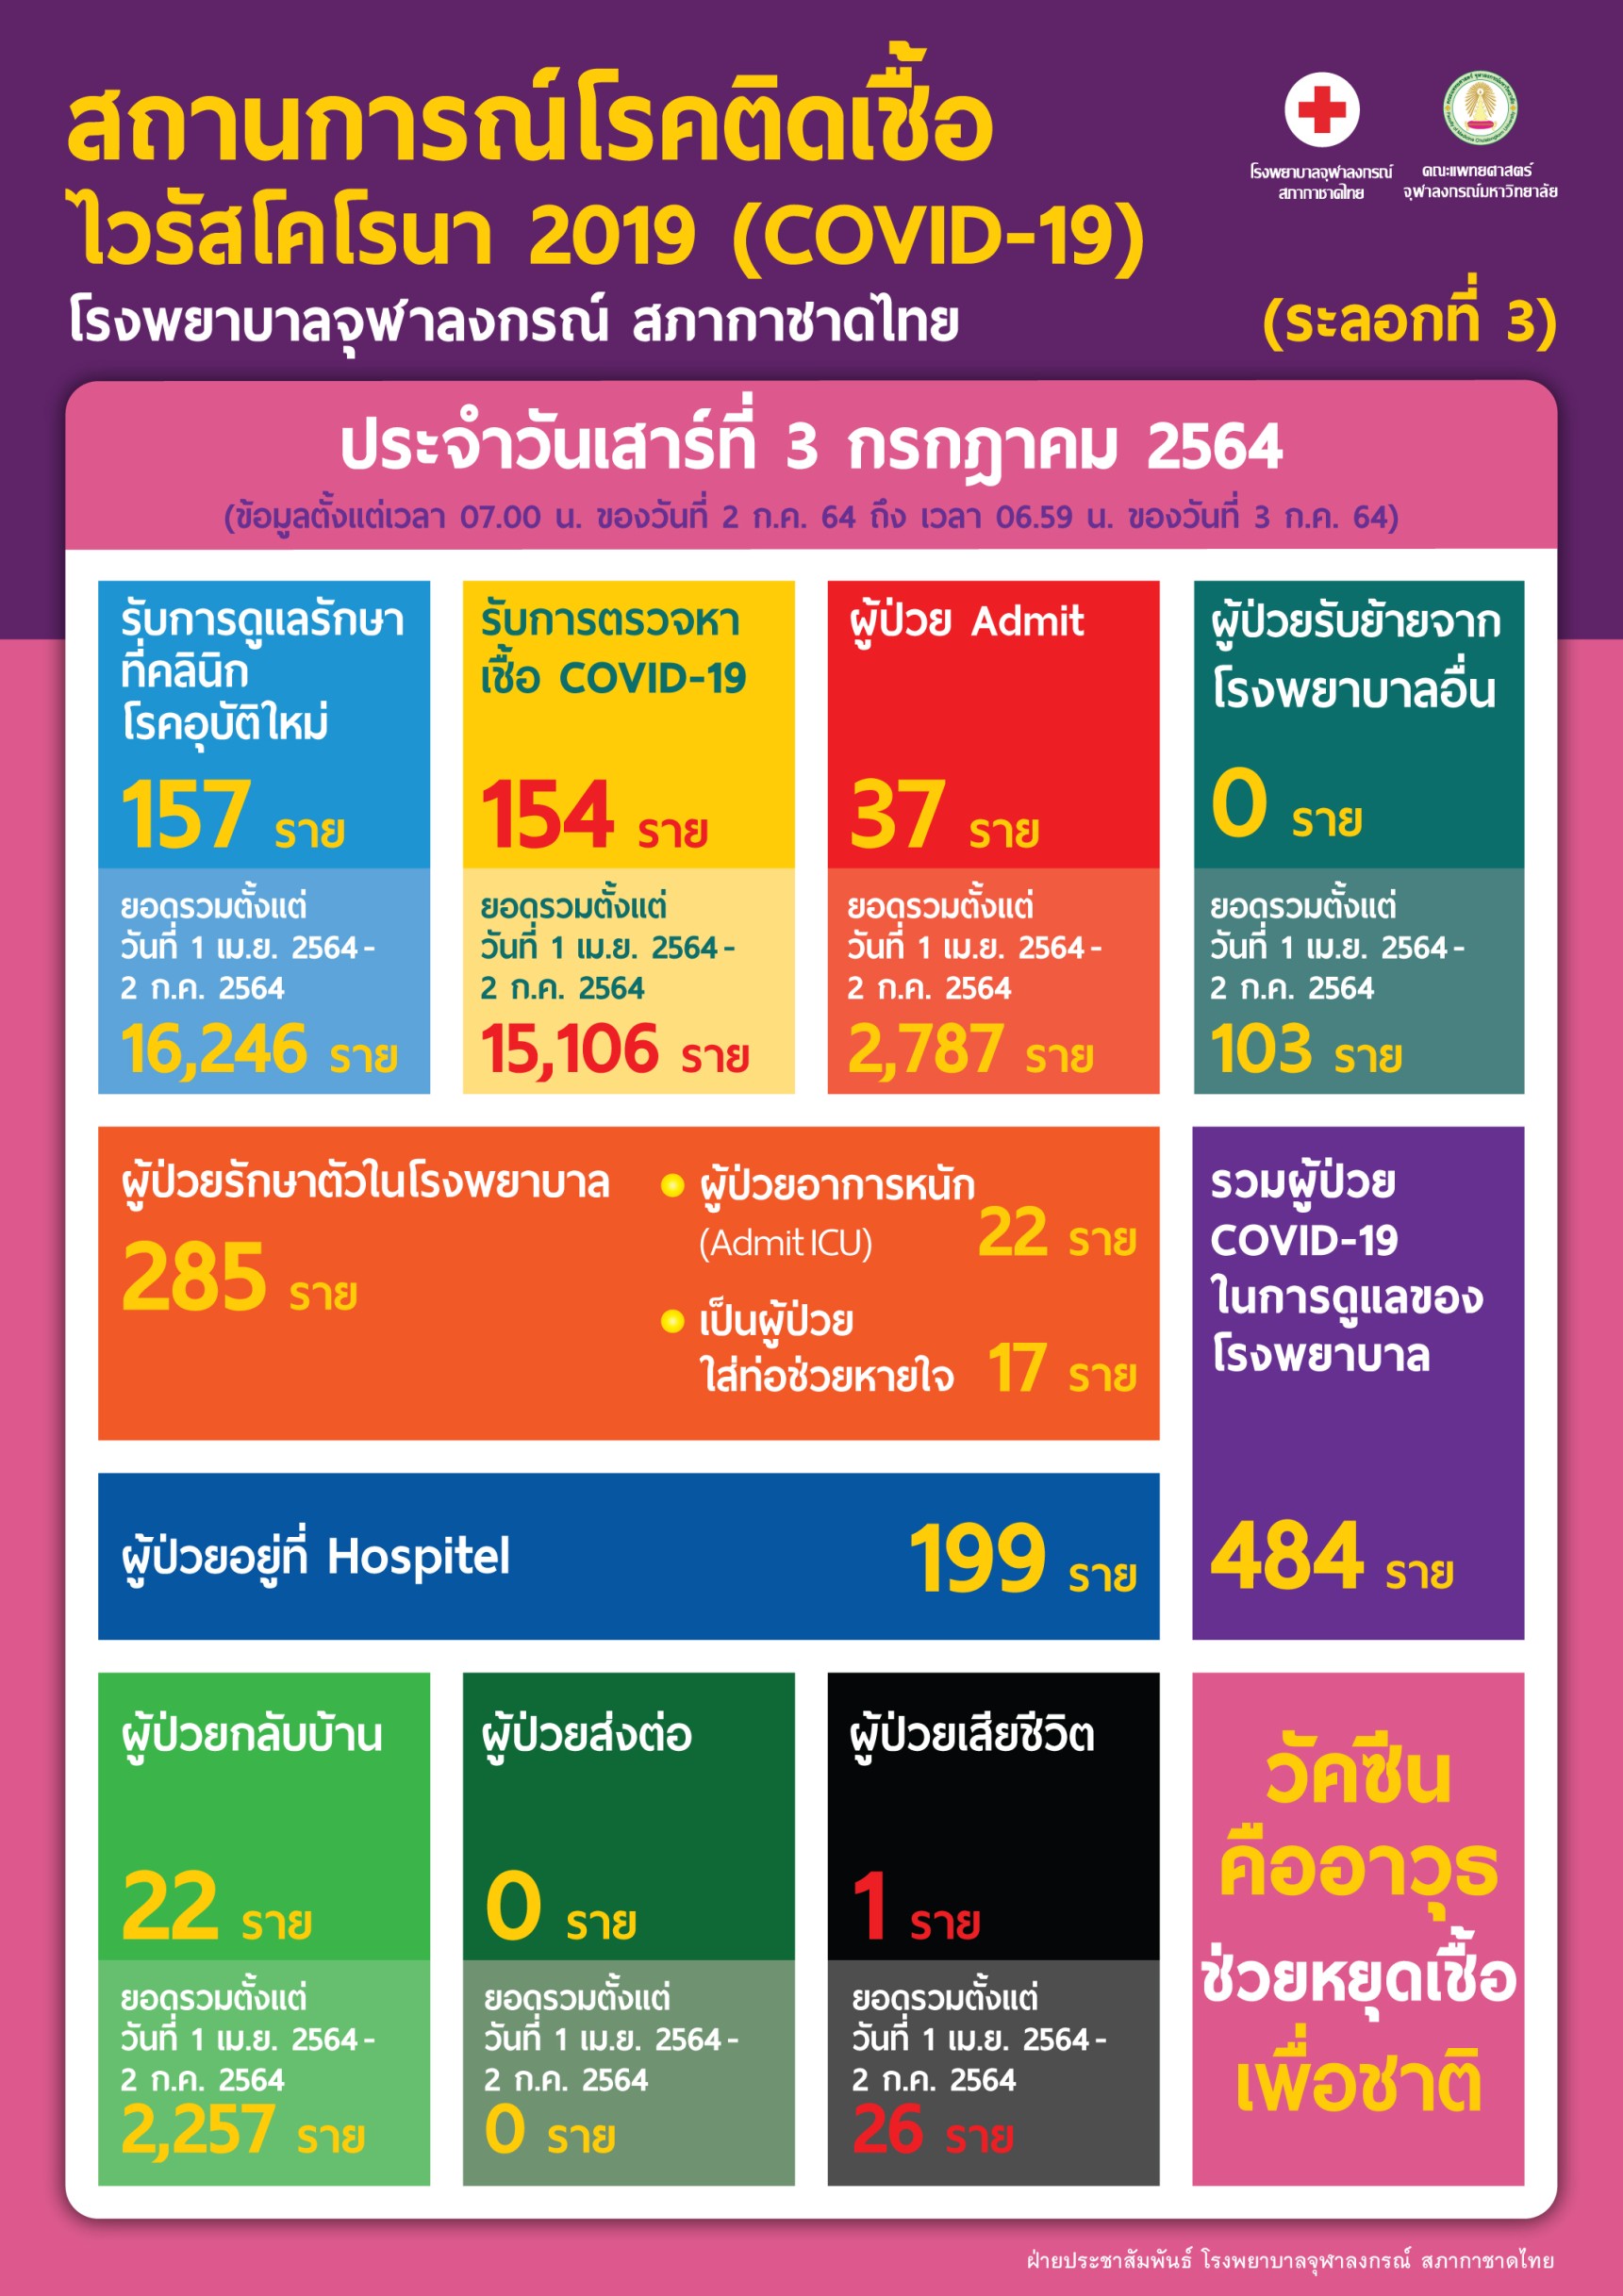 สถานการณ์โรคติดเชื้อไวรัสโคโรนา 2019 (COVID-19) (ระลอกที่ 3) โรงพยาบาลจุฬาลงกรณ์ สภากาชาดไทย ประจำวันเสาร์ที่ 3 กรกฎาคม 2564